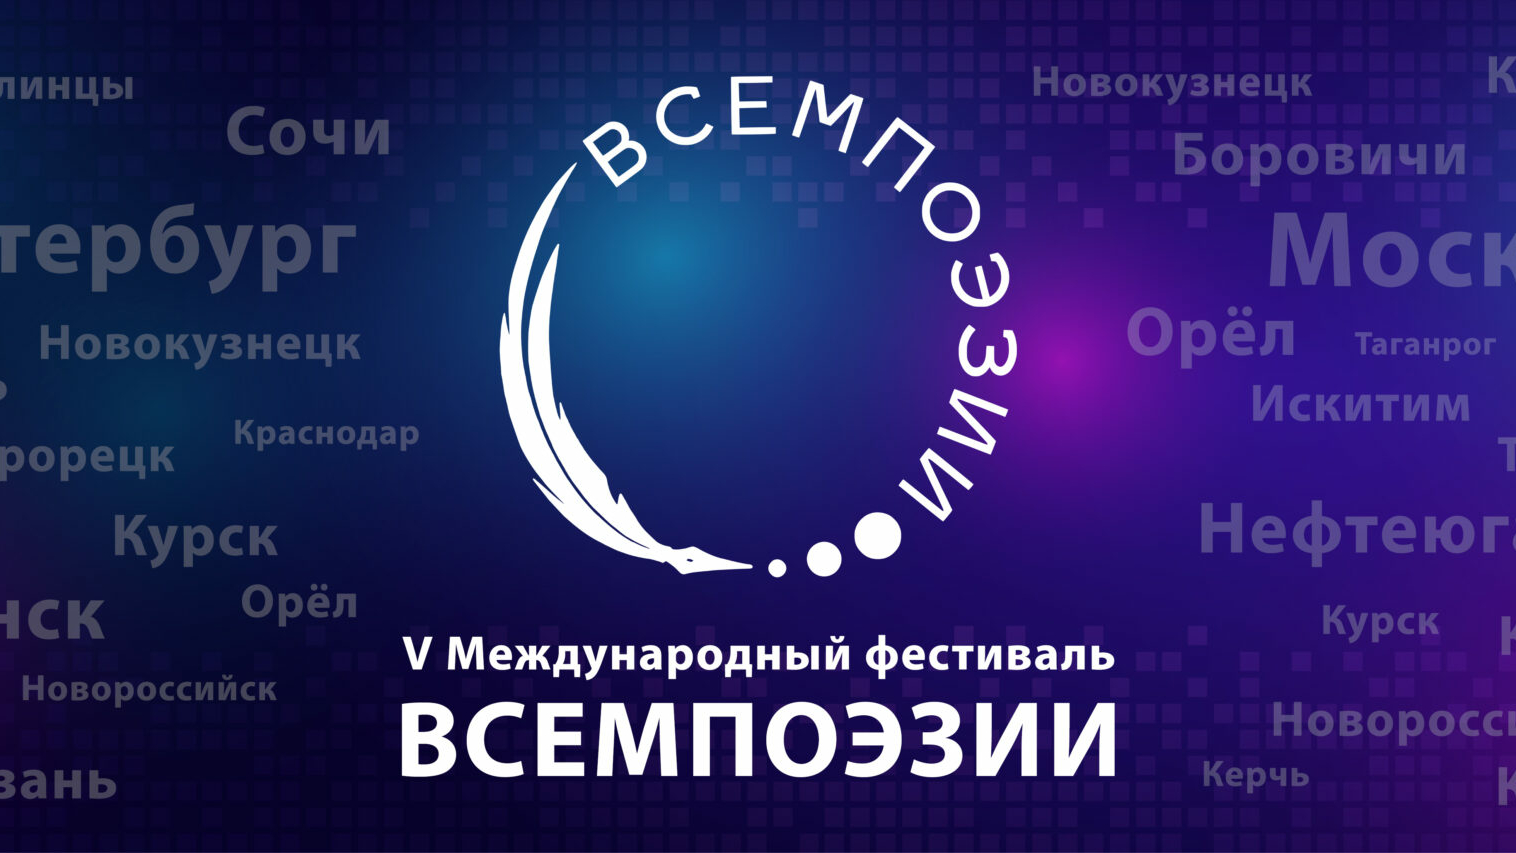 Поэты Петербурга могут посетить V Международный фестиваль «Всемпоэзии»